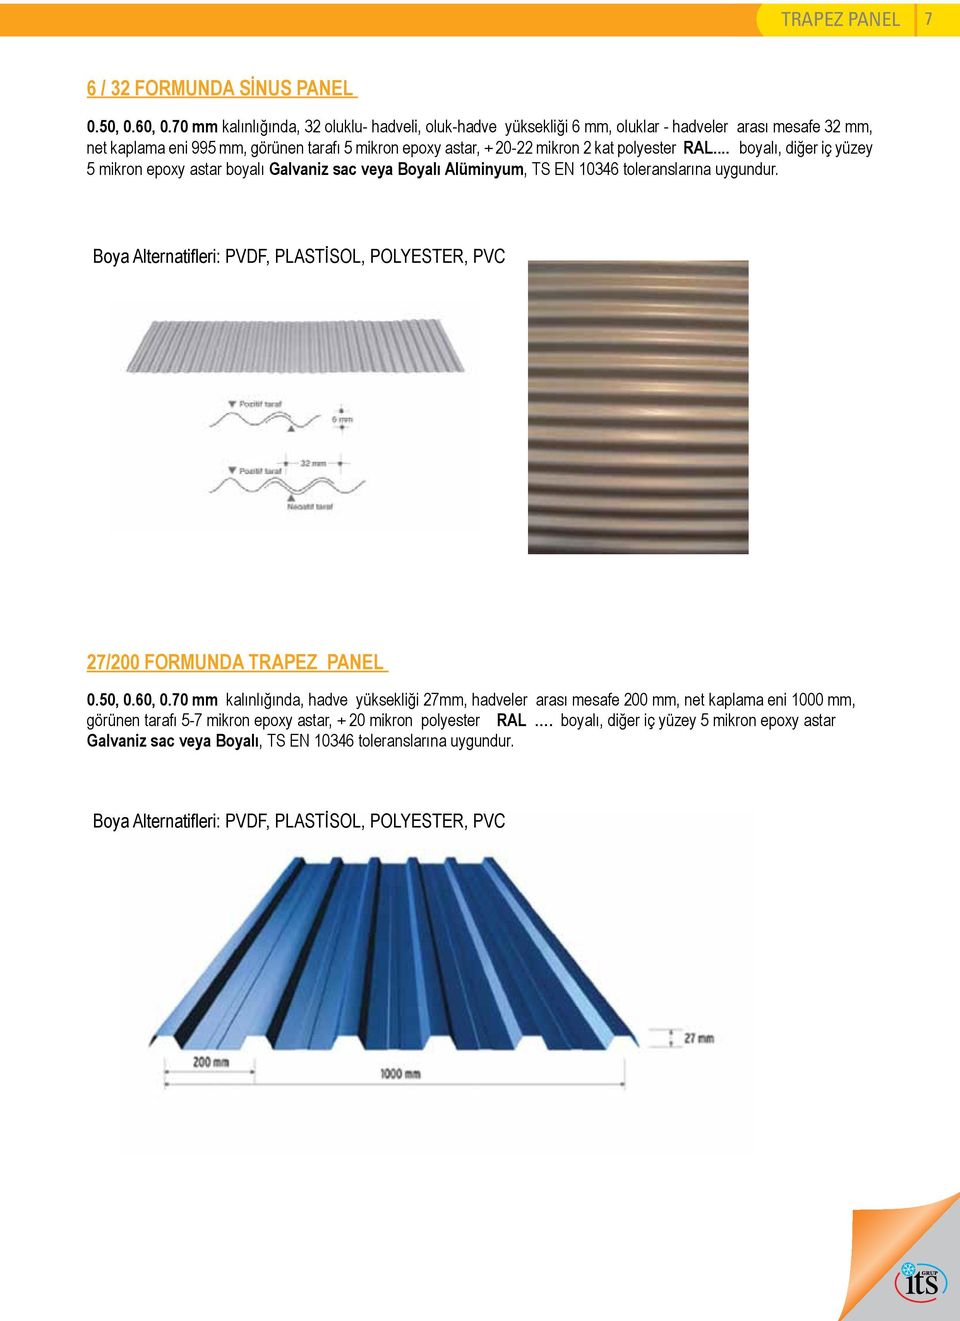 RAL... boyalı, diğer iç yüzey 5 mikron epoxy astar boyalı Galvaniz sac veya Boyalı Alüminyum, TS EN 10346 toleranslarına uygundur.